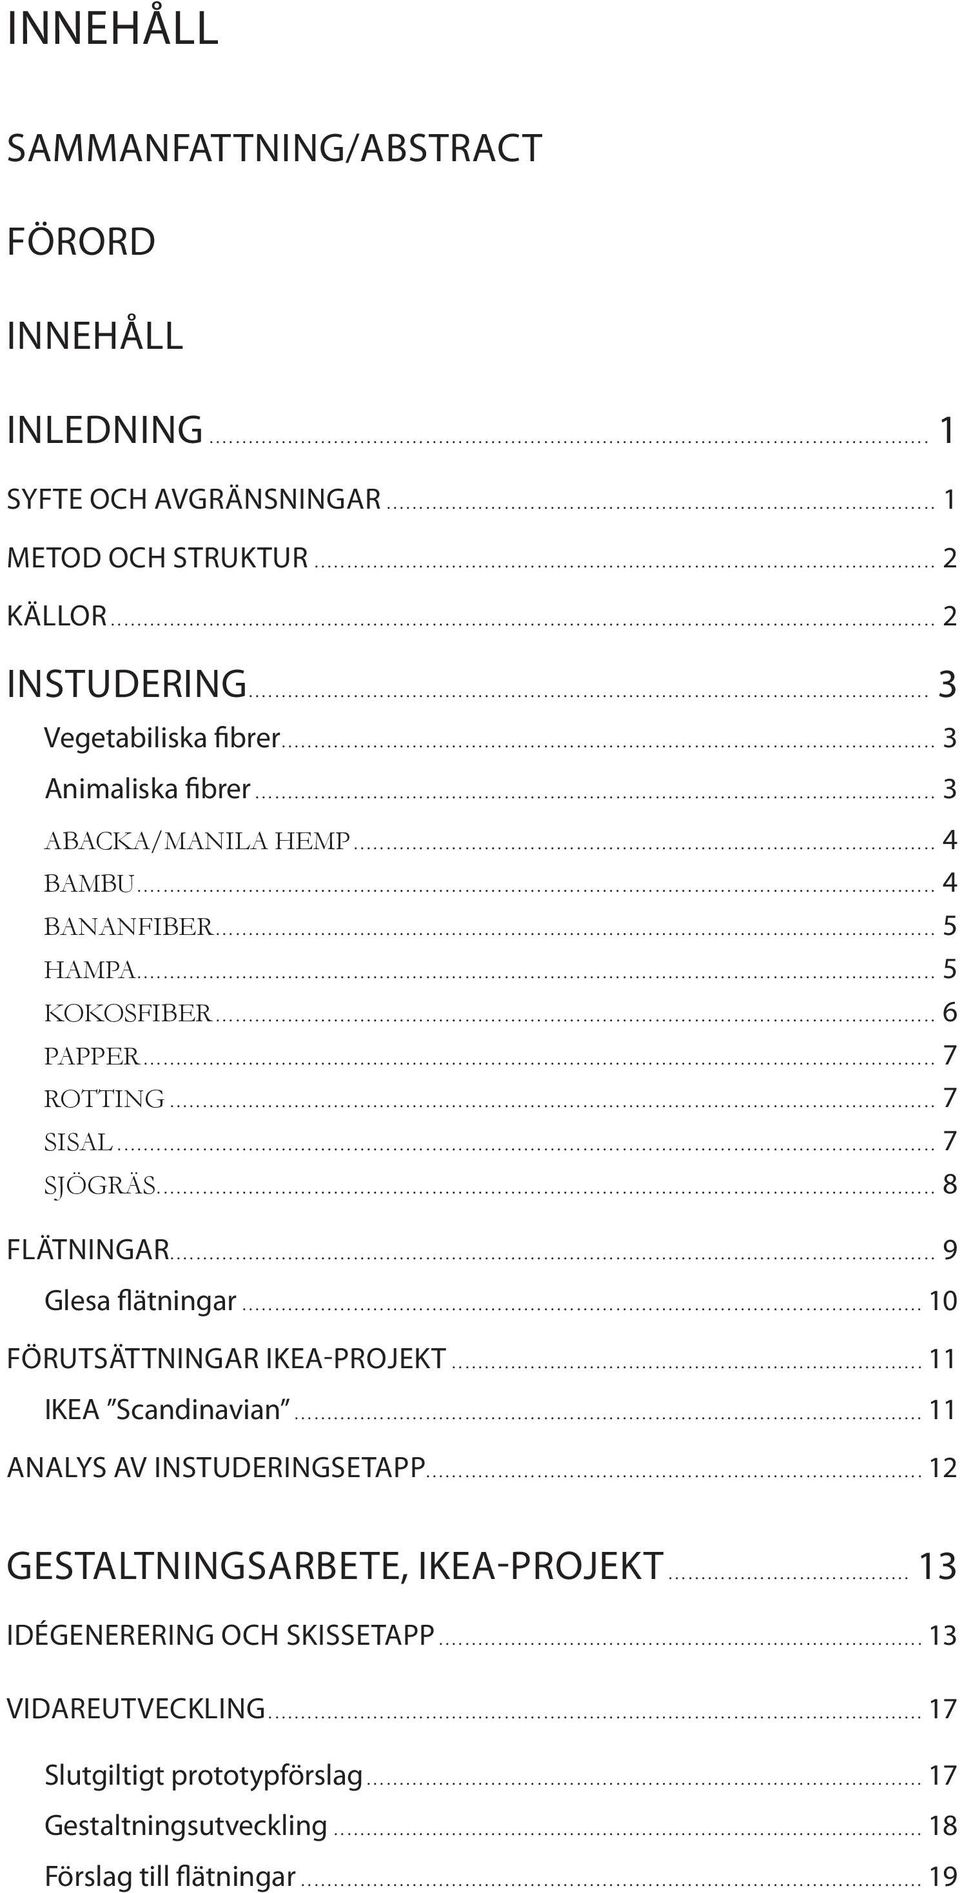 .. 7 Sjögräs... 8 flätningar... 9 Glesa flätningar...10 förutsättningar ikea-projekt... 11 IKEA Scandinavian... 11 analys av instuderingsetapp.